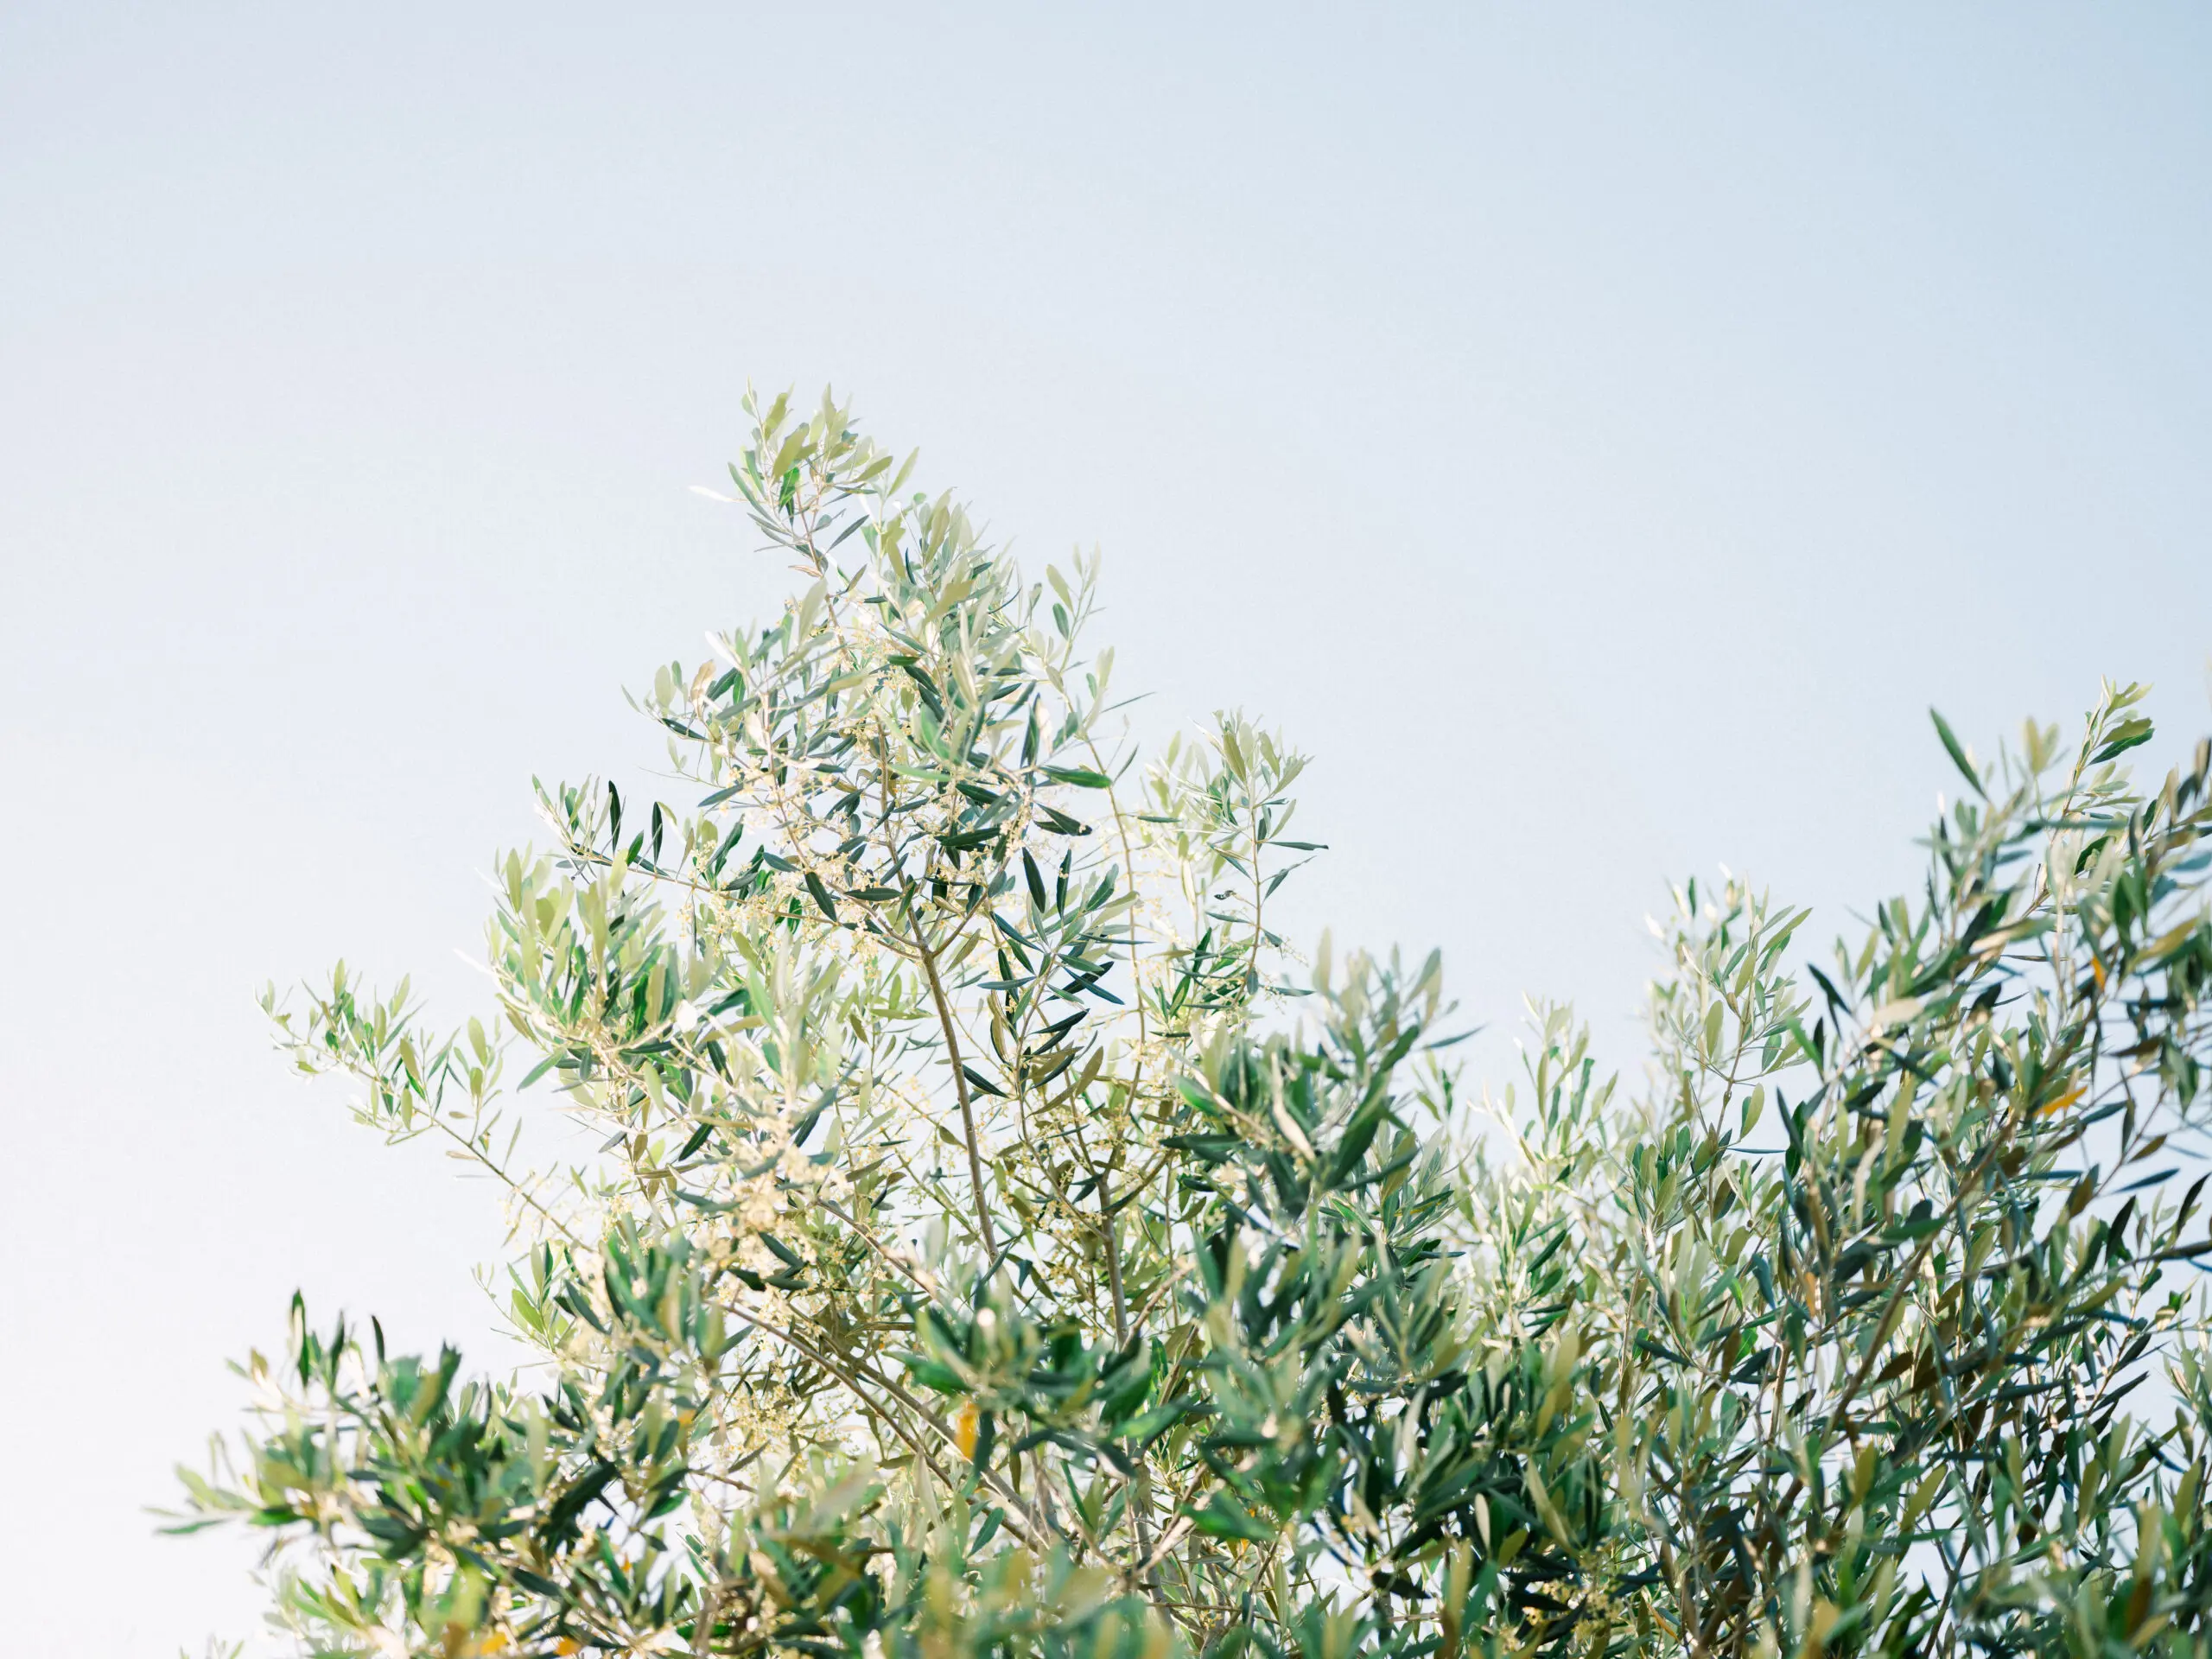 Wandbild (26236) Olives In Ostuni | Italy Travel Photography by Raisa Zwart präsentiert: Natur